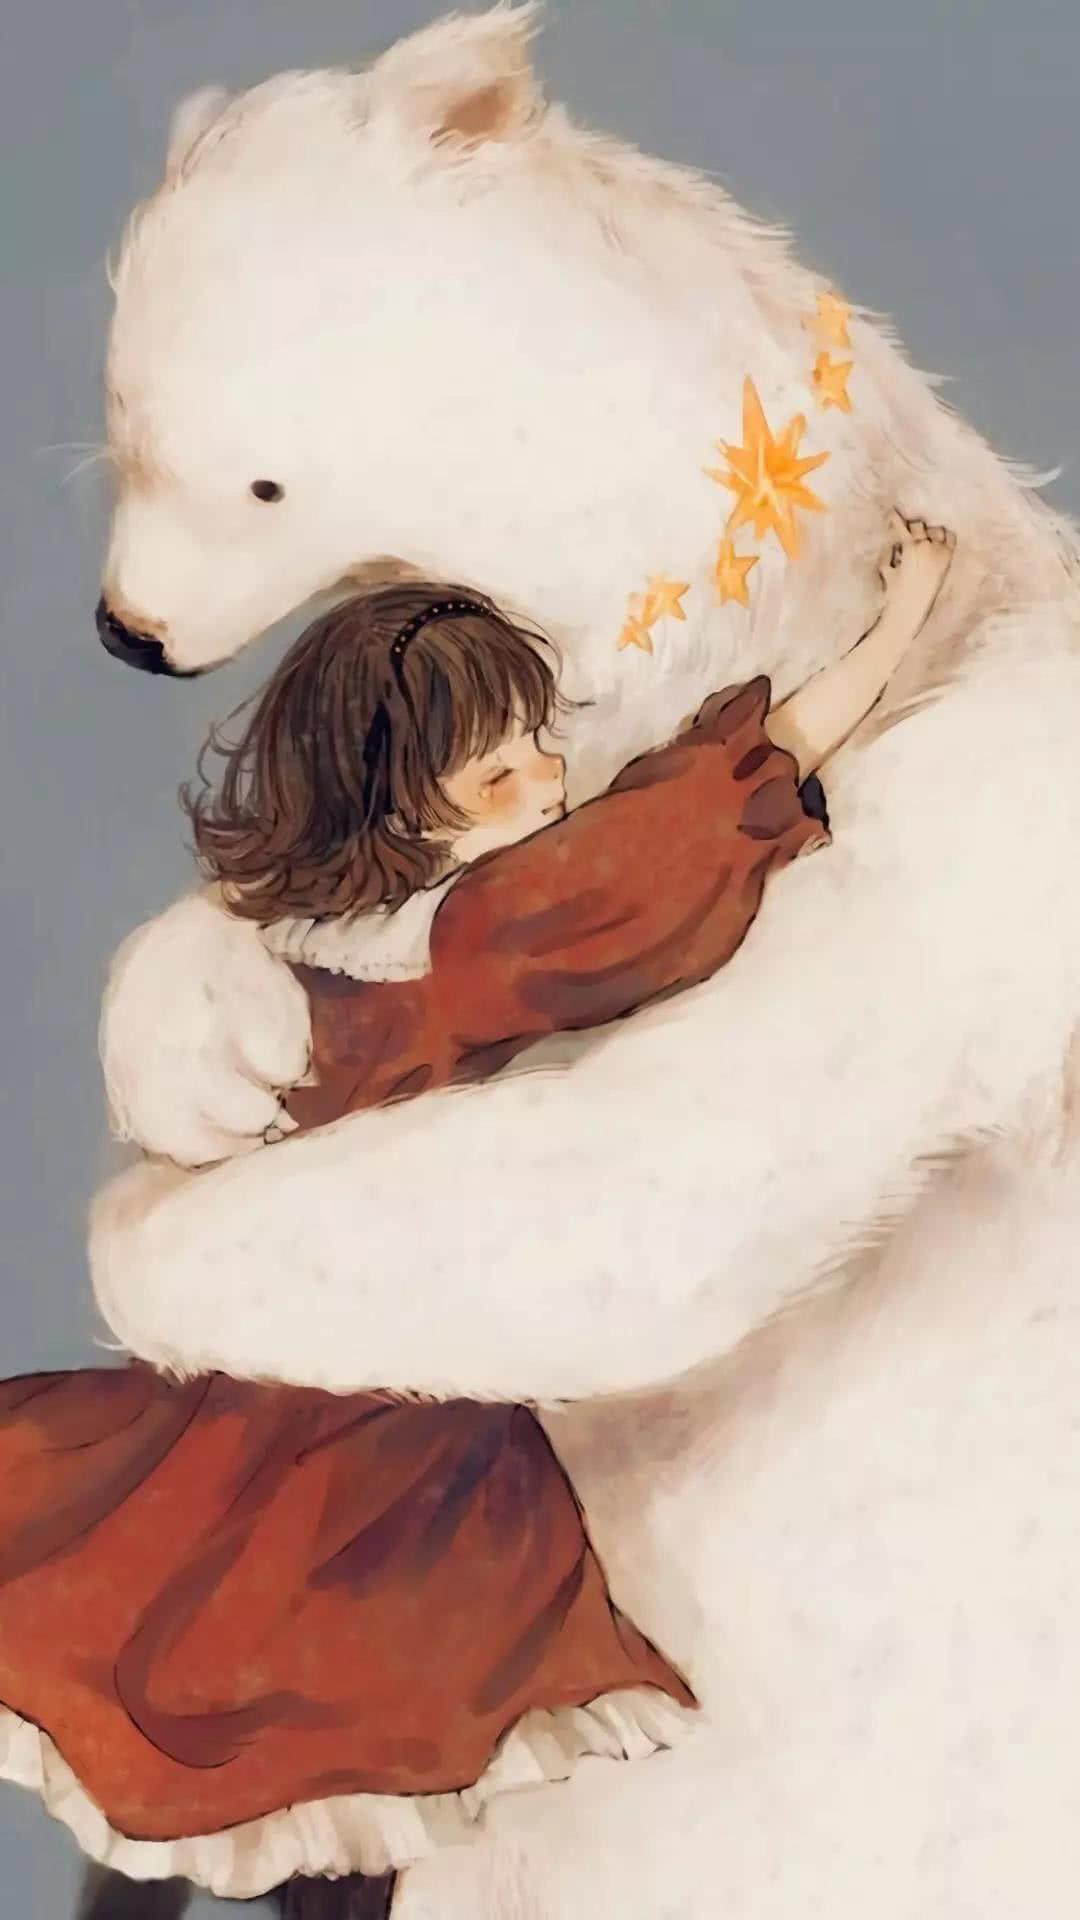 寻找一张白色大熊抱着女孩的壁纸,求帮忙? 